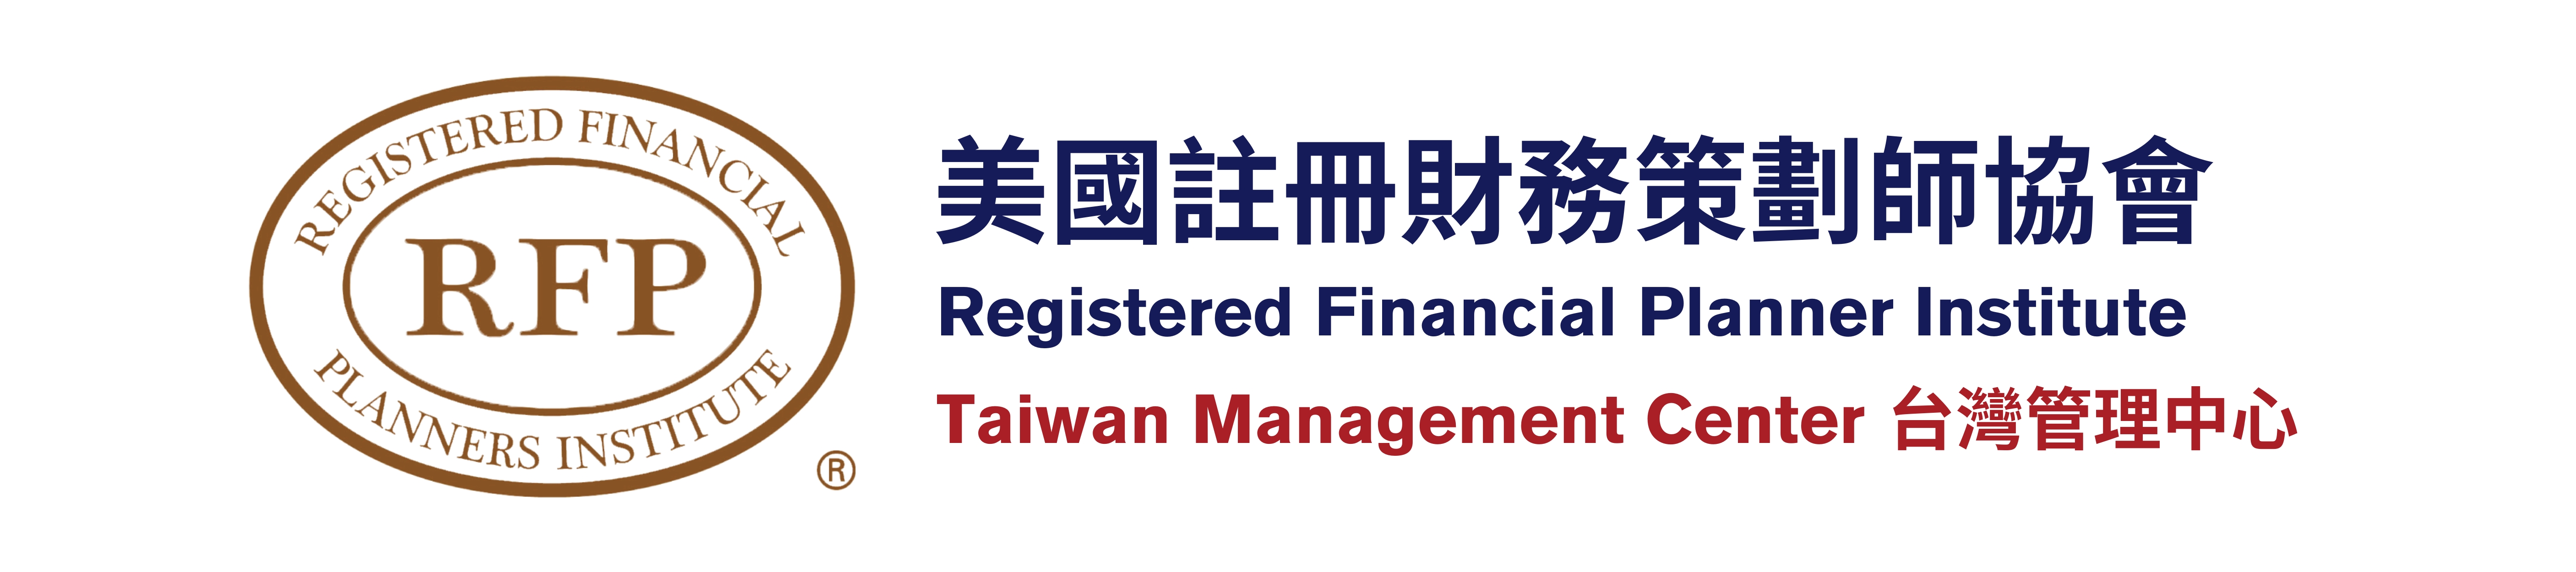 RFPI美國註冊財務策劃師協會 台灣管理中心